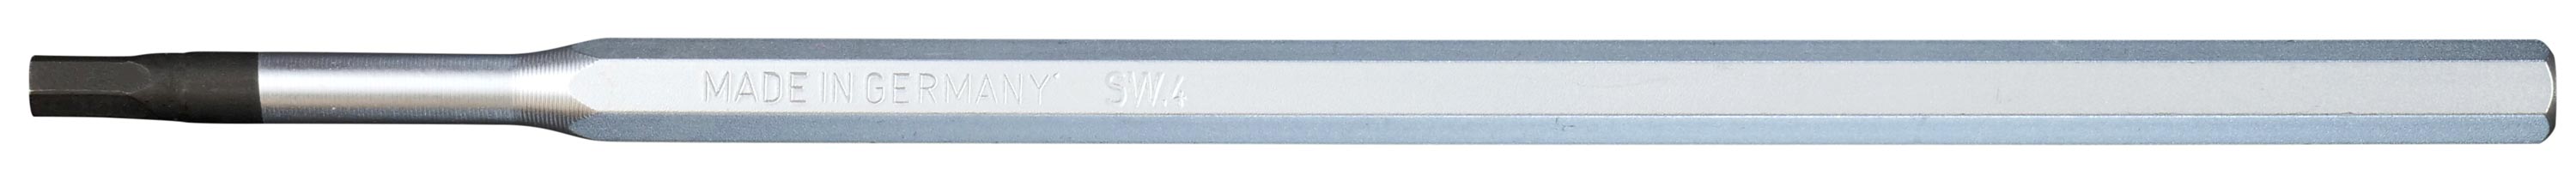 HUCK Gurtbandnetz, Größe: 3,05 x 6,05 m - Made in Germany - Huck